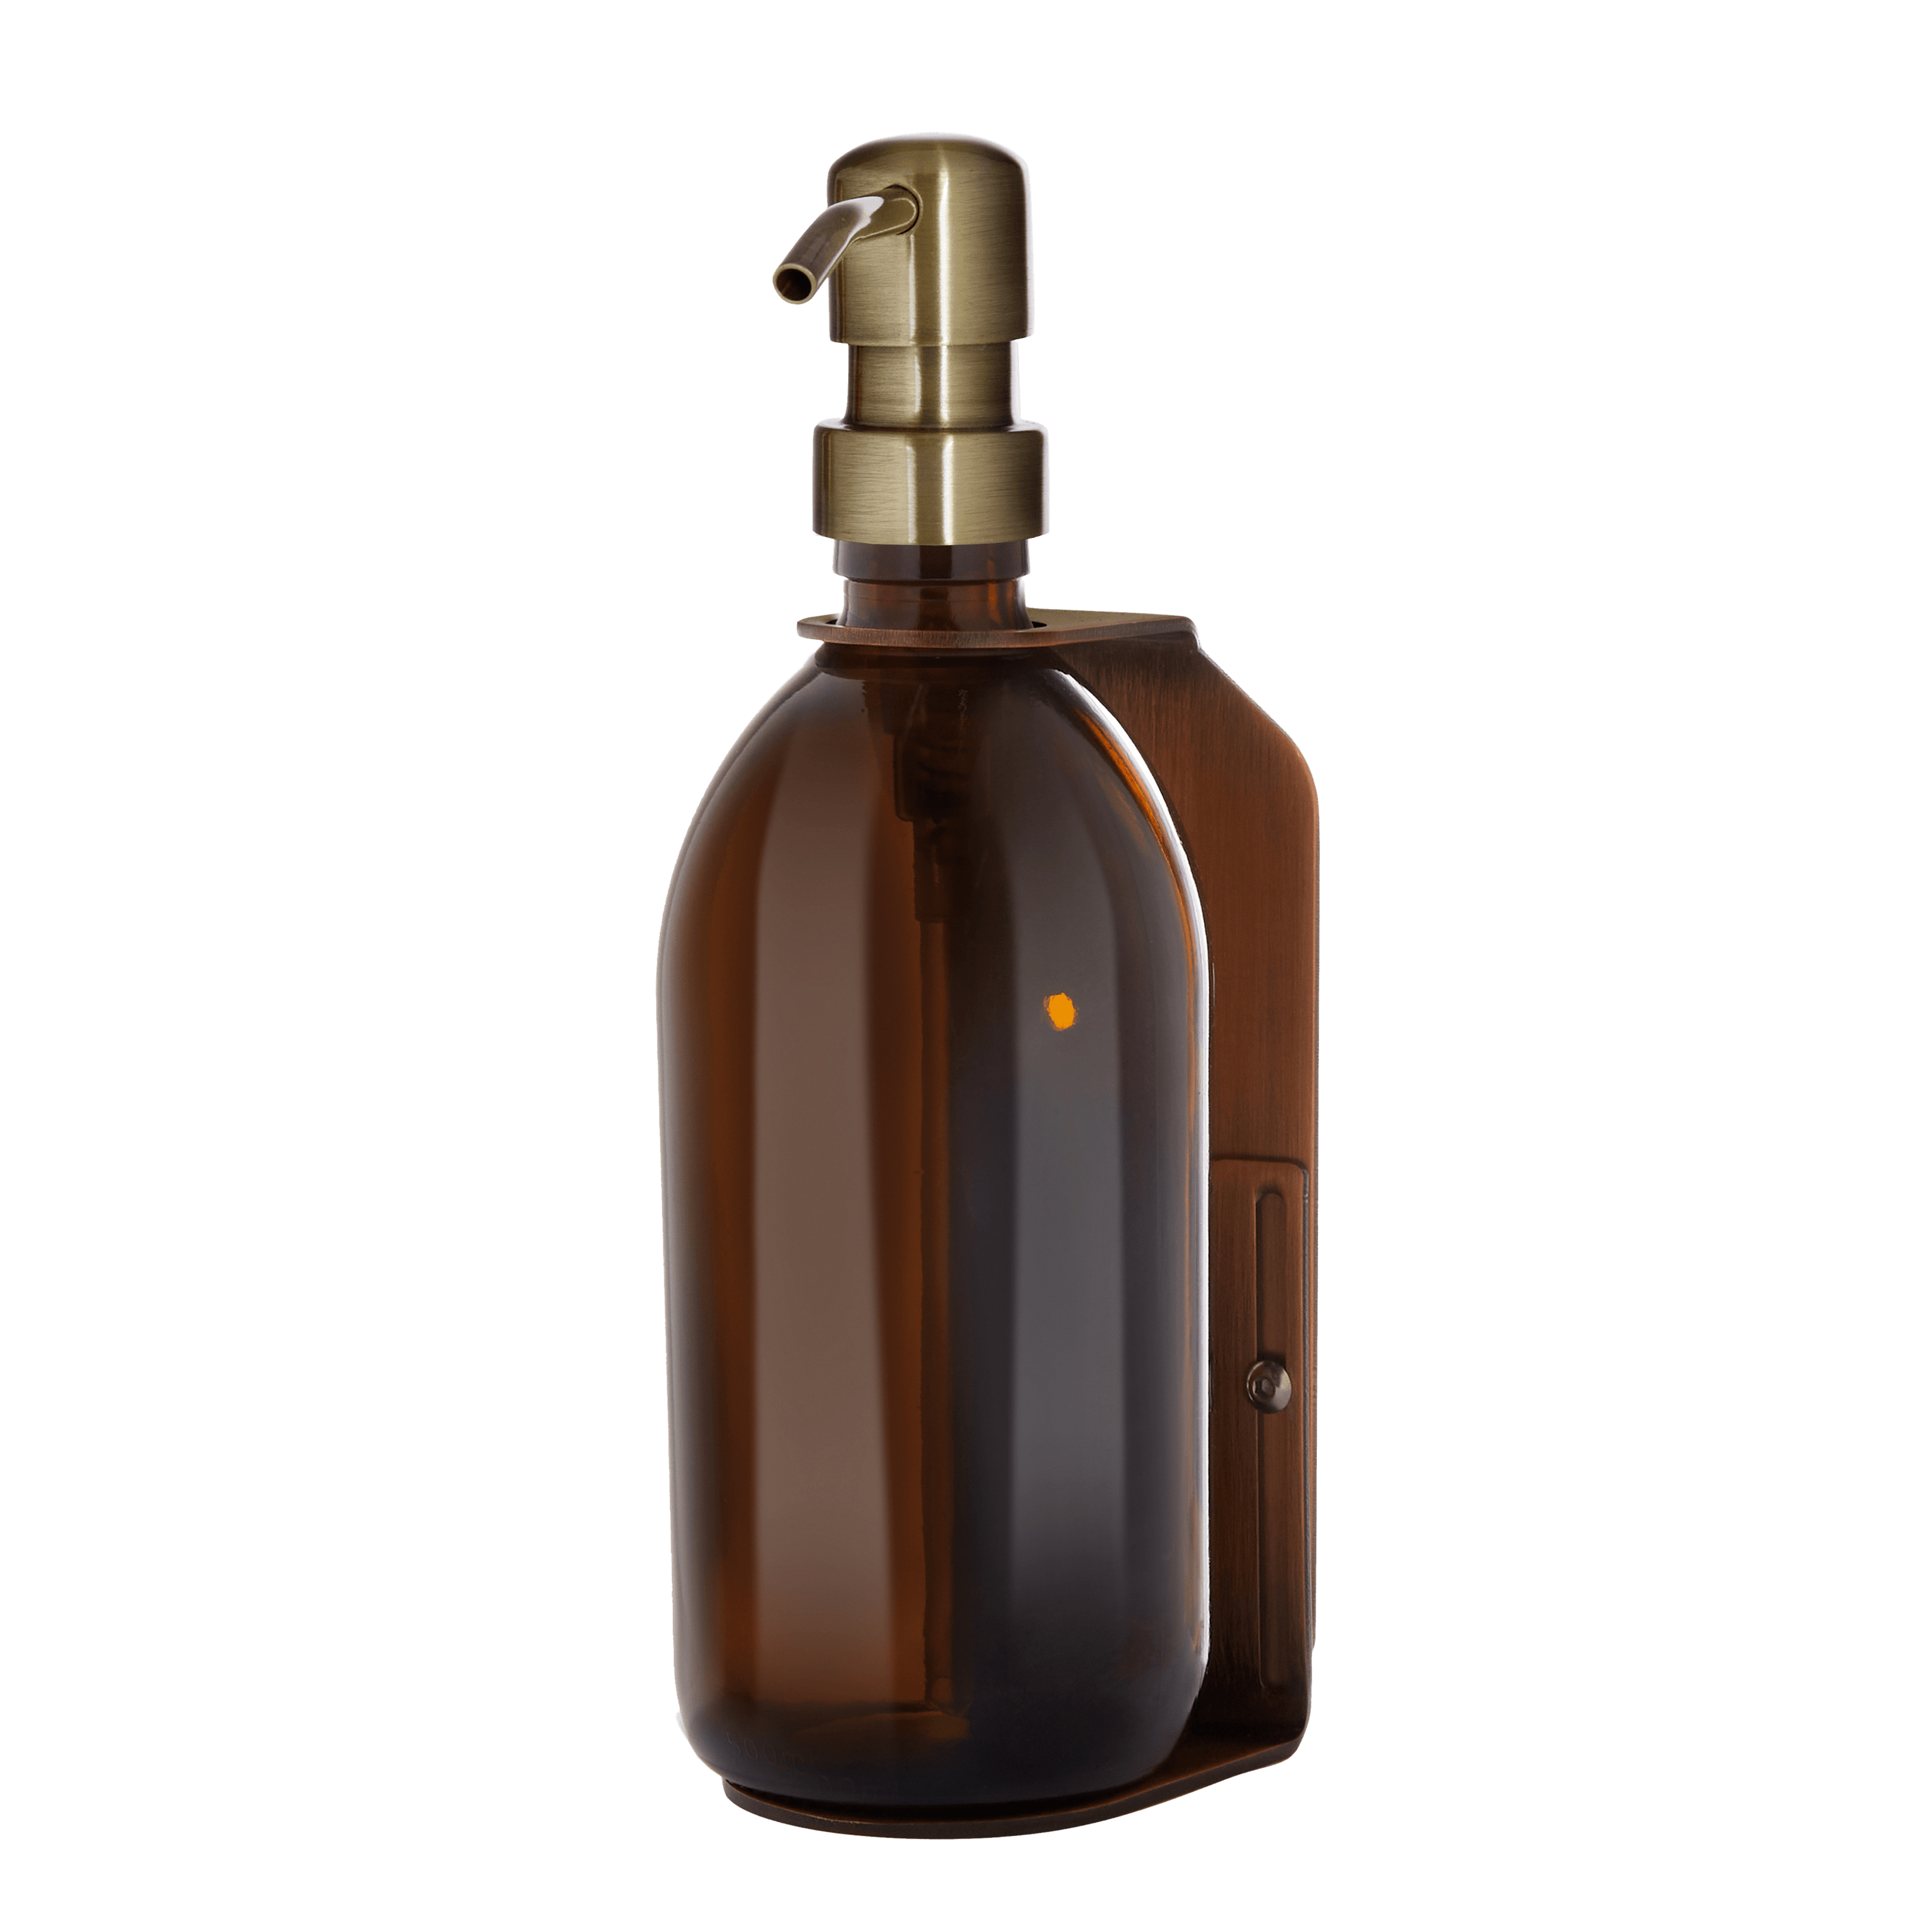 Kupferner Wandseifenspender mit 250ml bernsteinfarbene Flaschen und goldener Pumpe